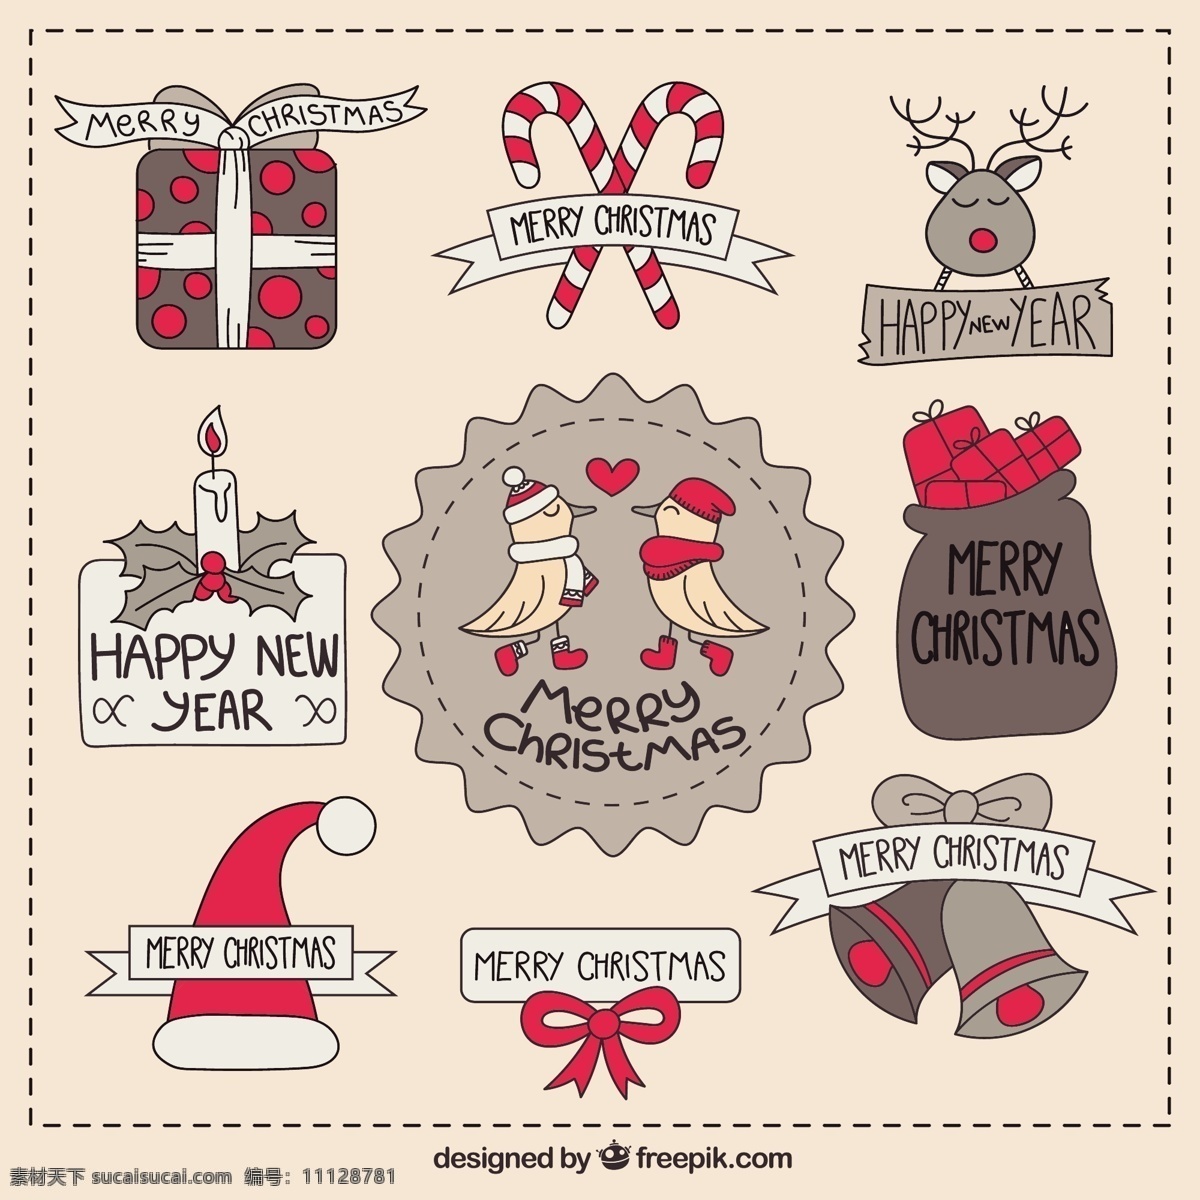 简略 圣诞 标签 可爱 收藏 圣诞节 一方面 徽章 圣诞快乐 冬天 手绘 快乐 庆祝 节日 绘画 节日快乐 手工绘图 绘制 季节 白色